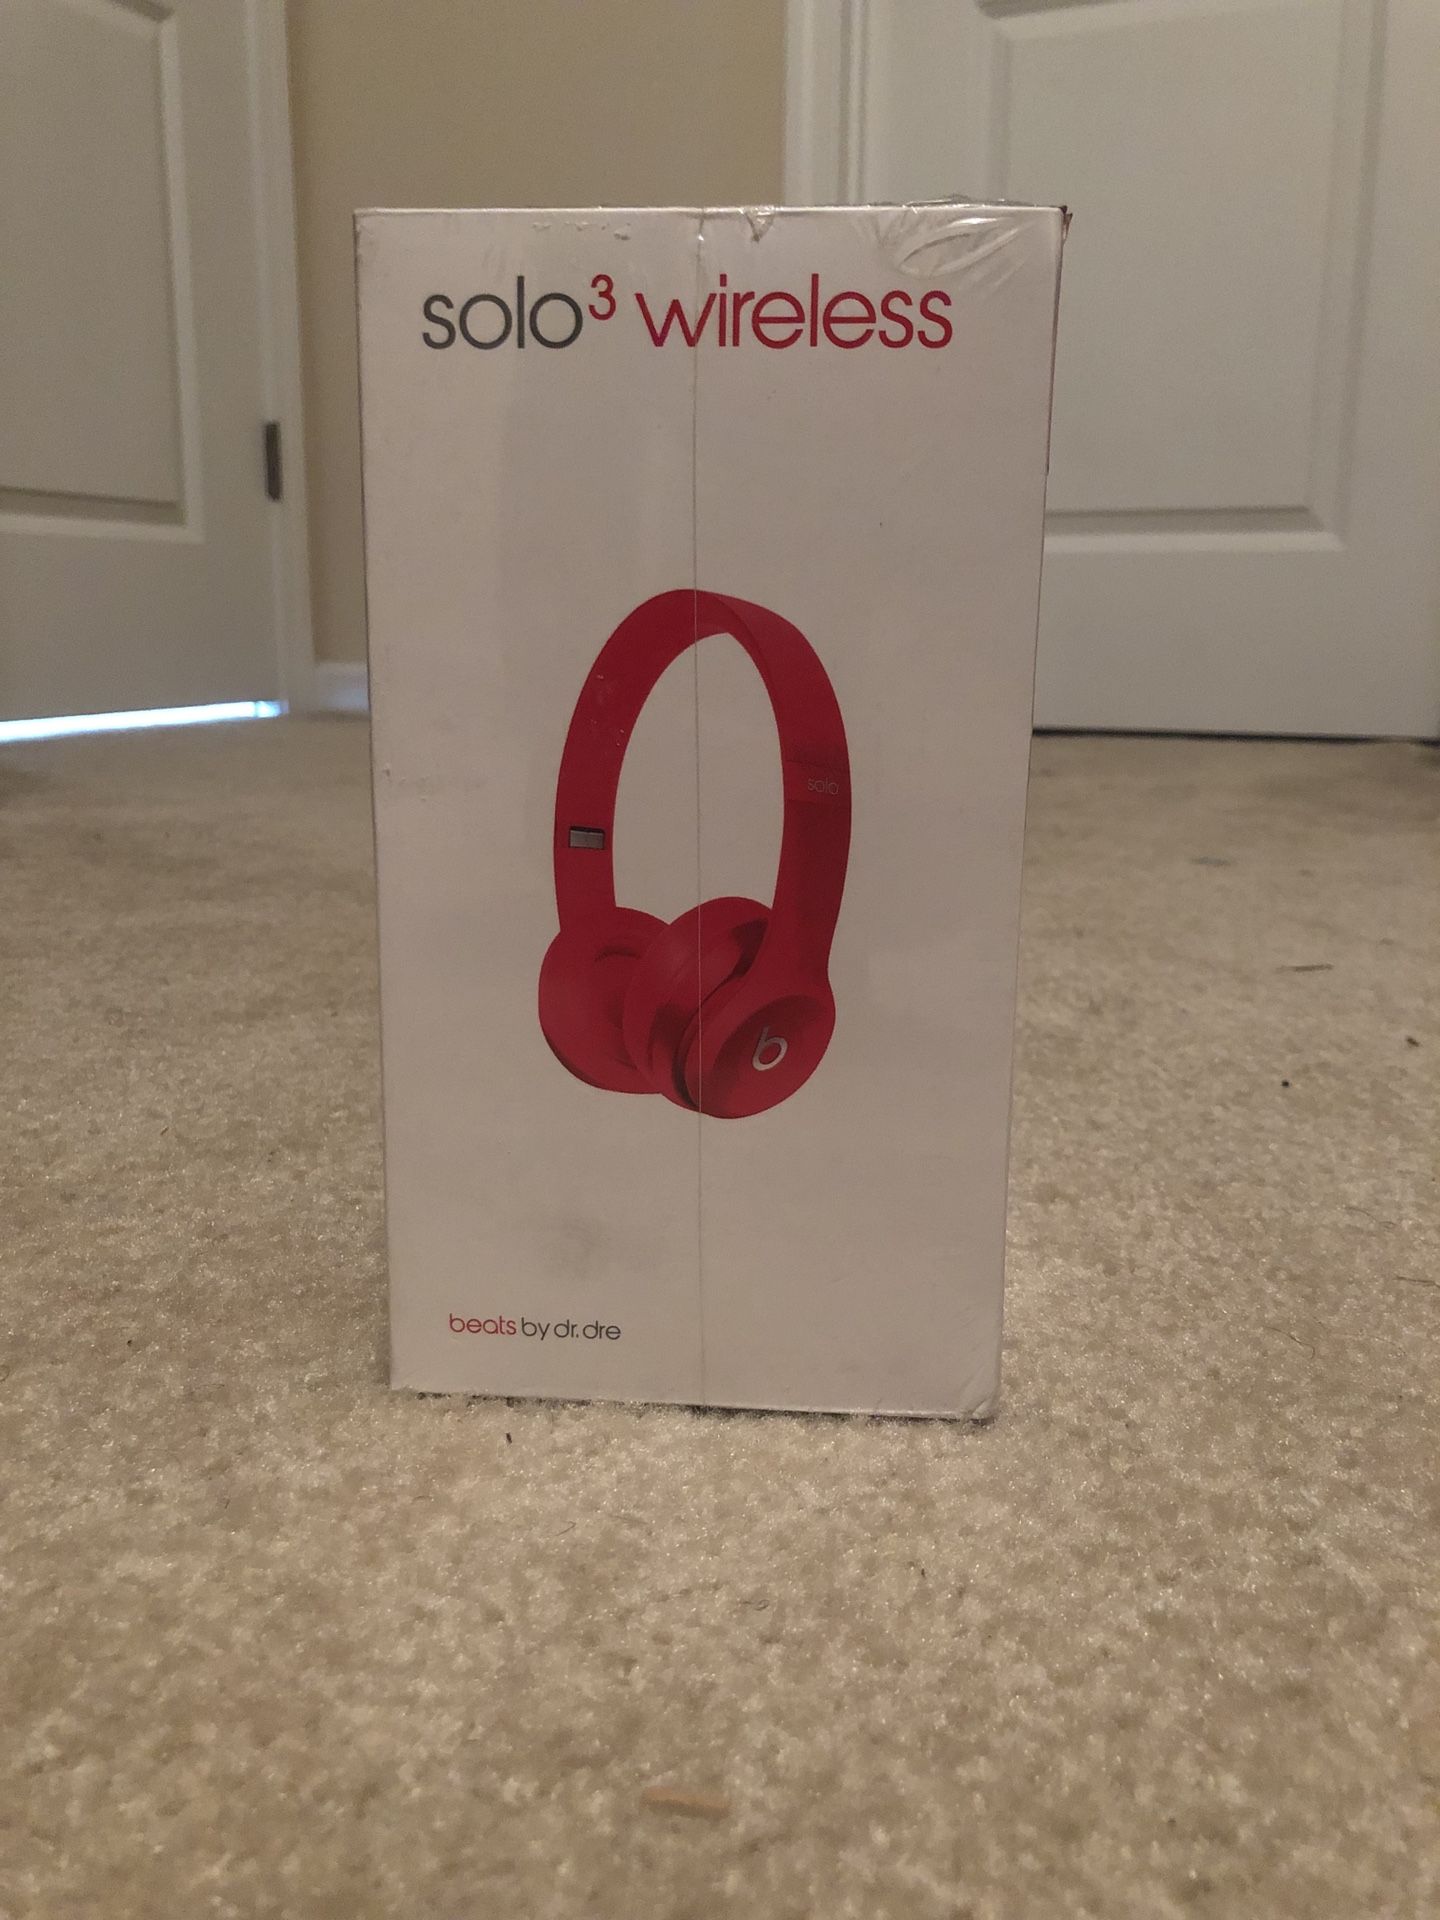 Solo 3 wireless beats